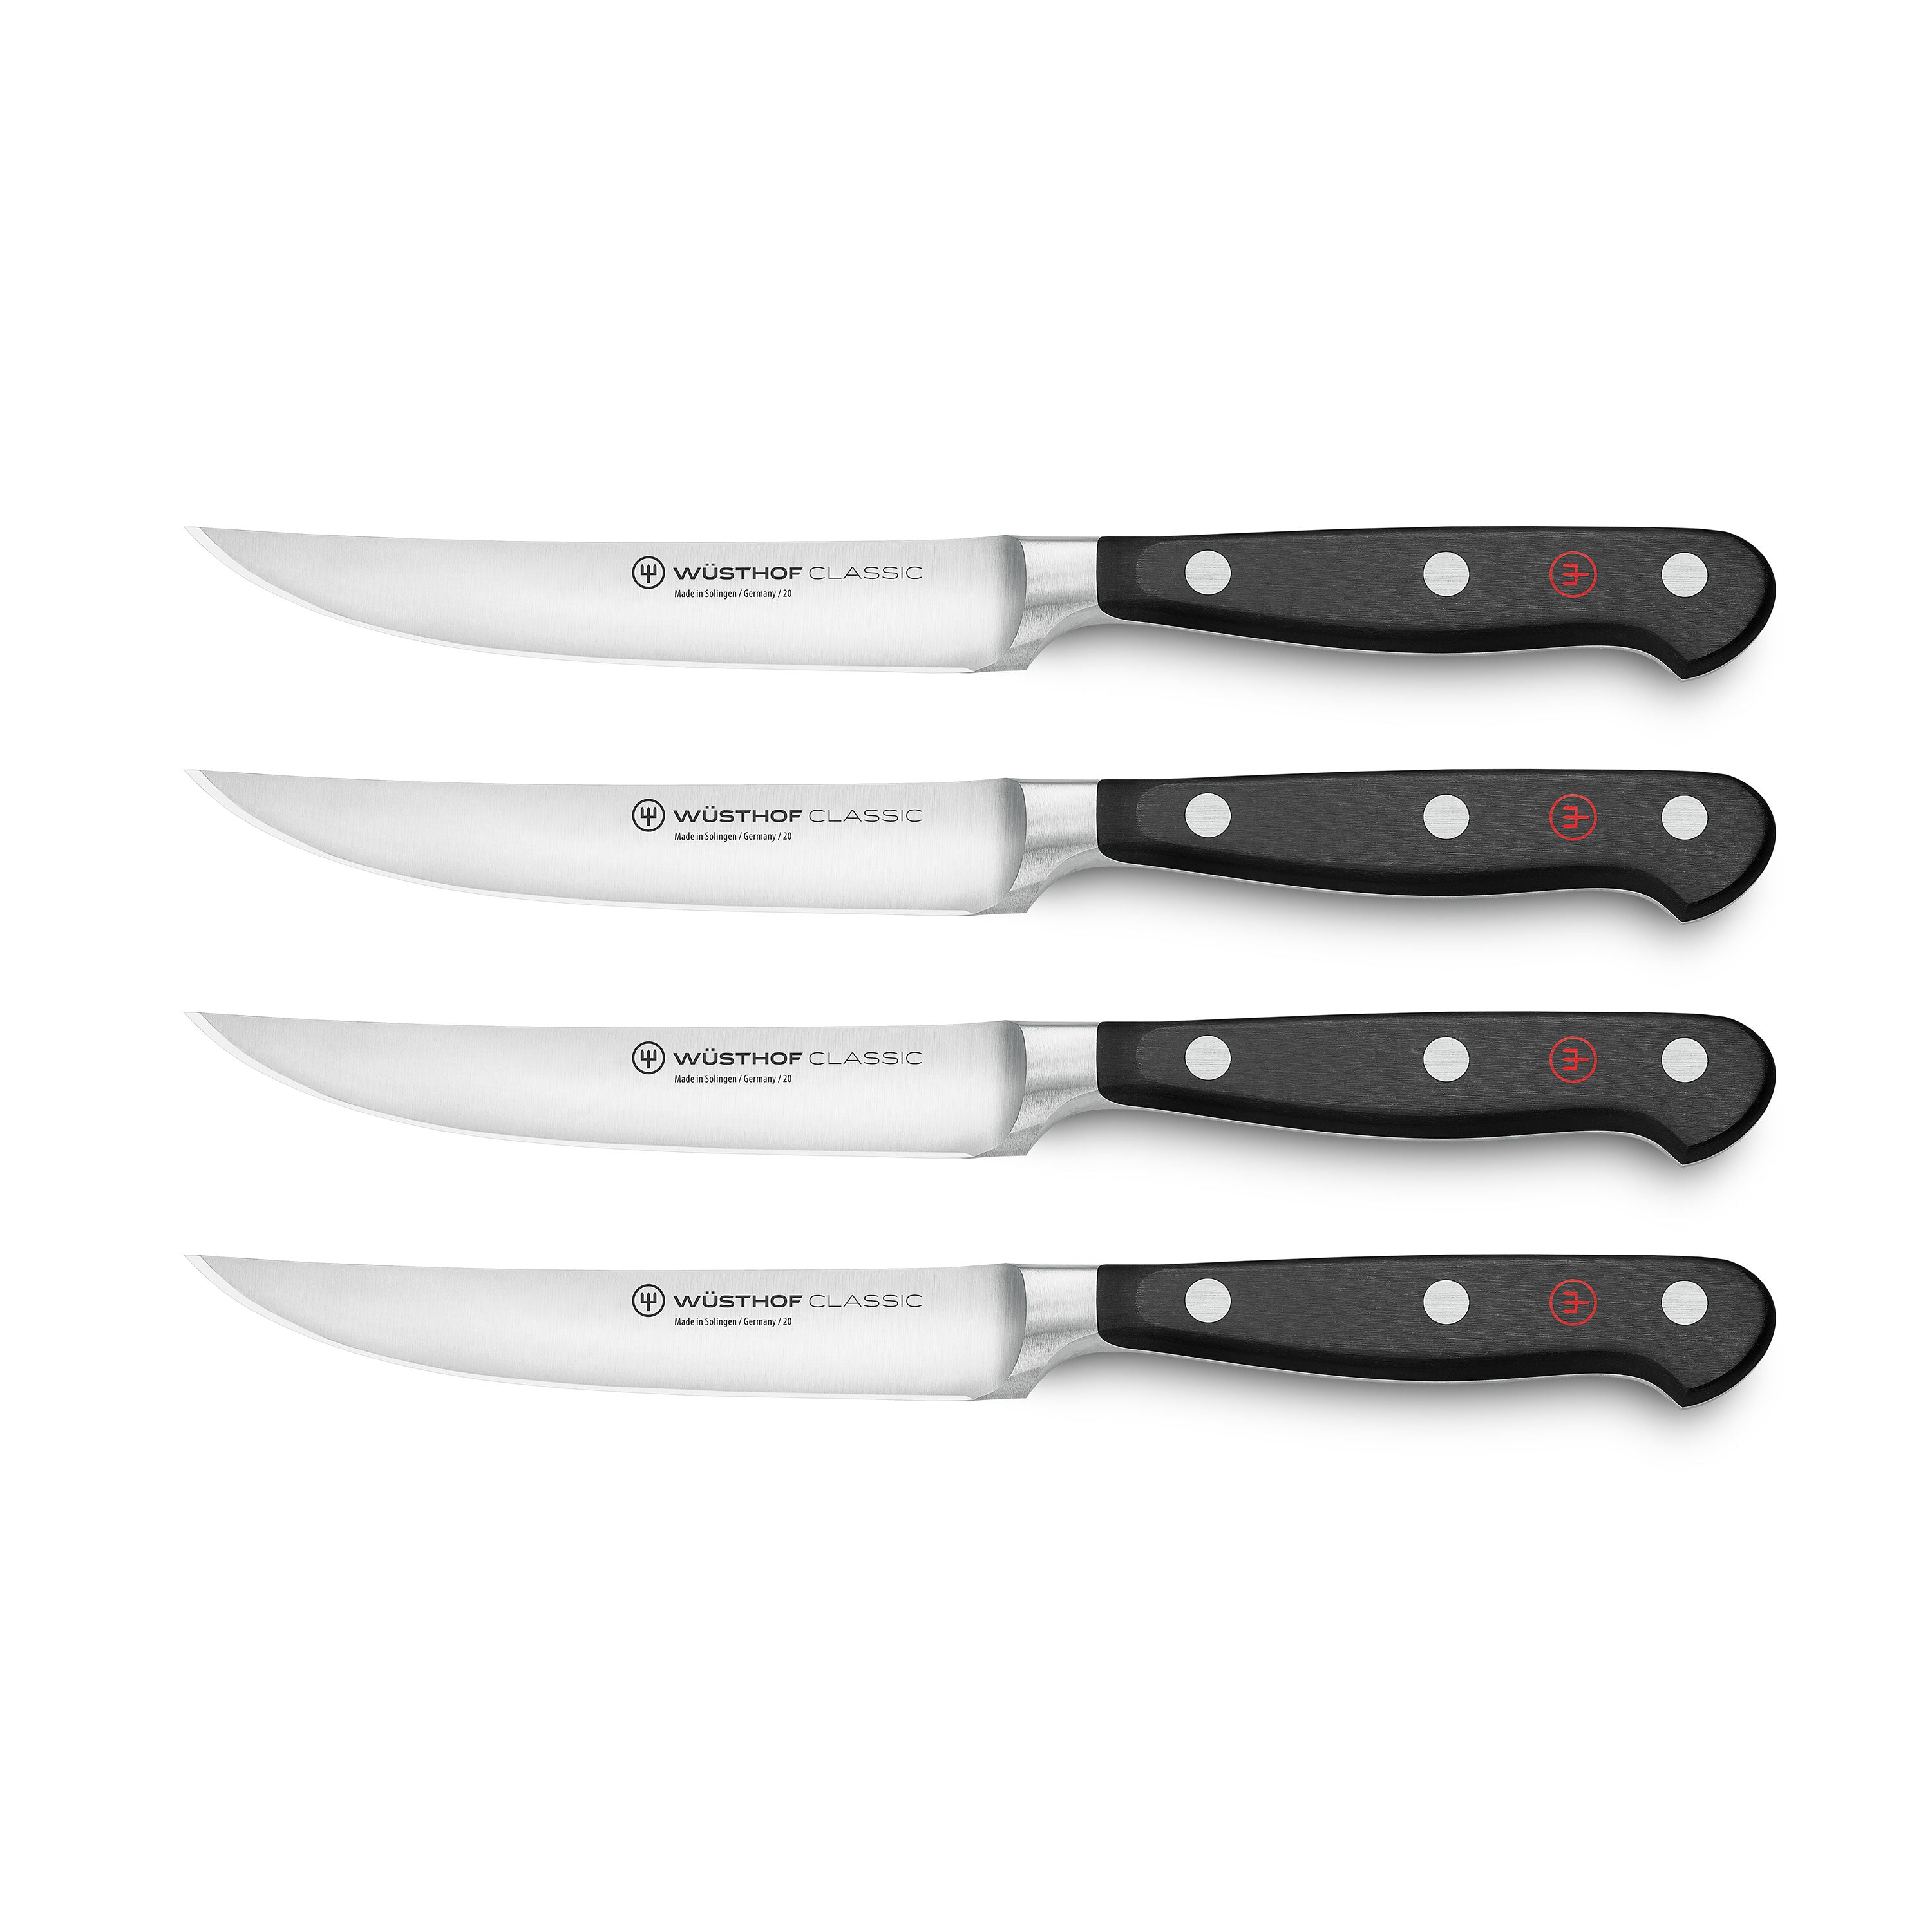 Steak Knife Set of 4, German Stainless Steel Dinner Cutlery